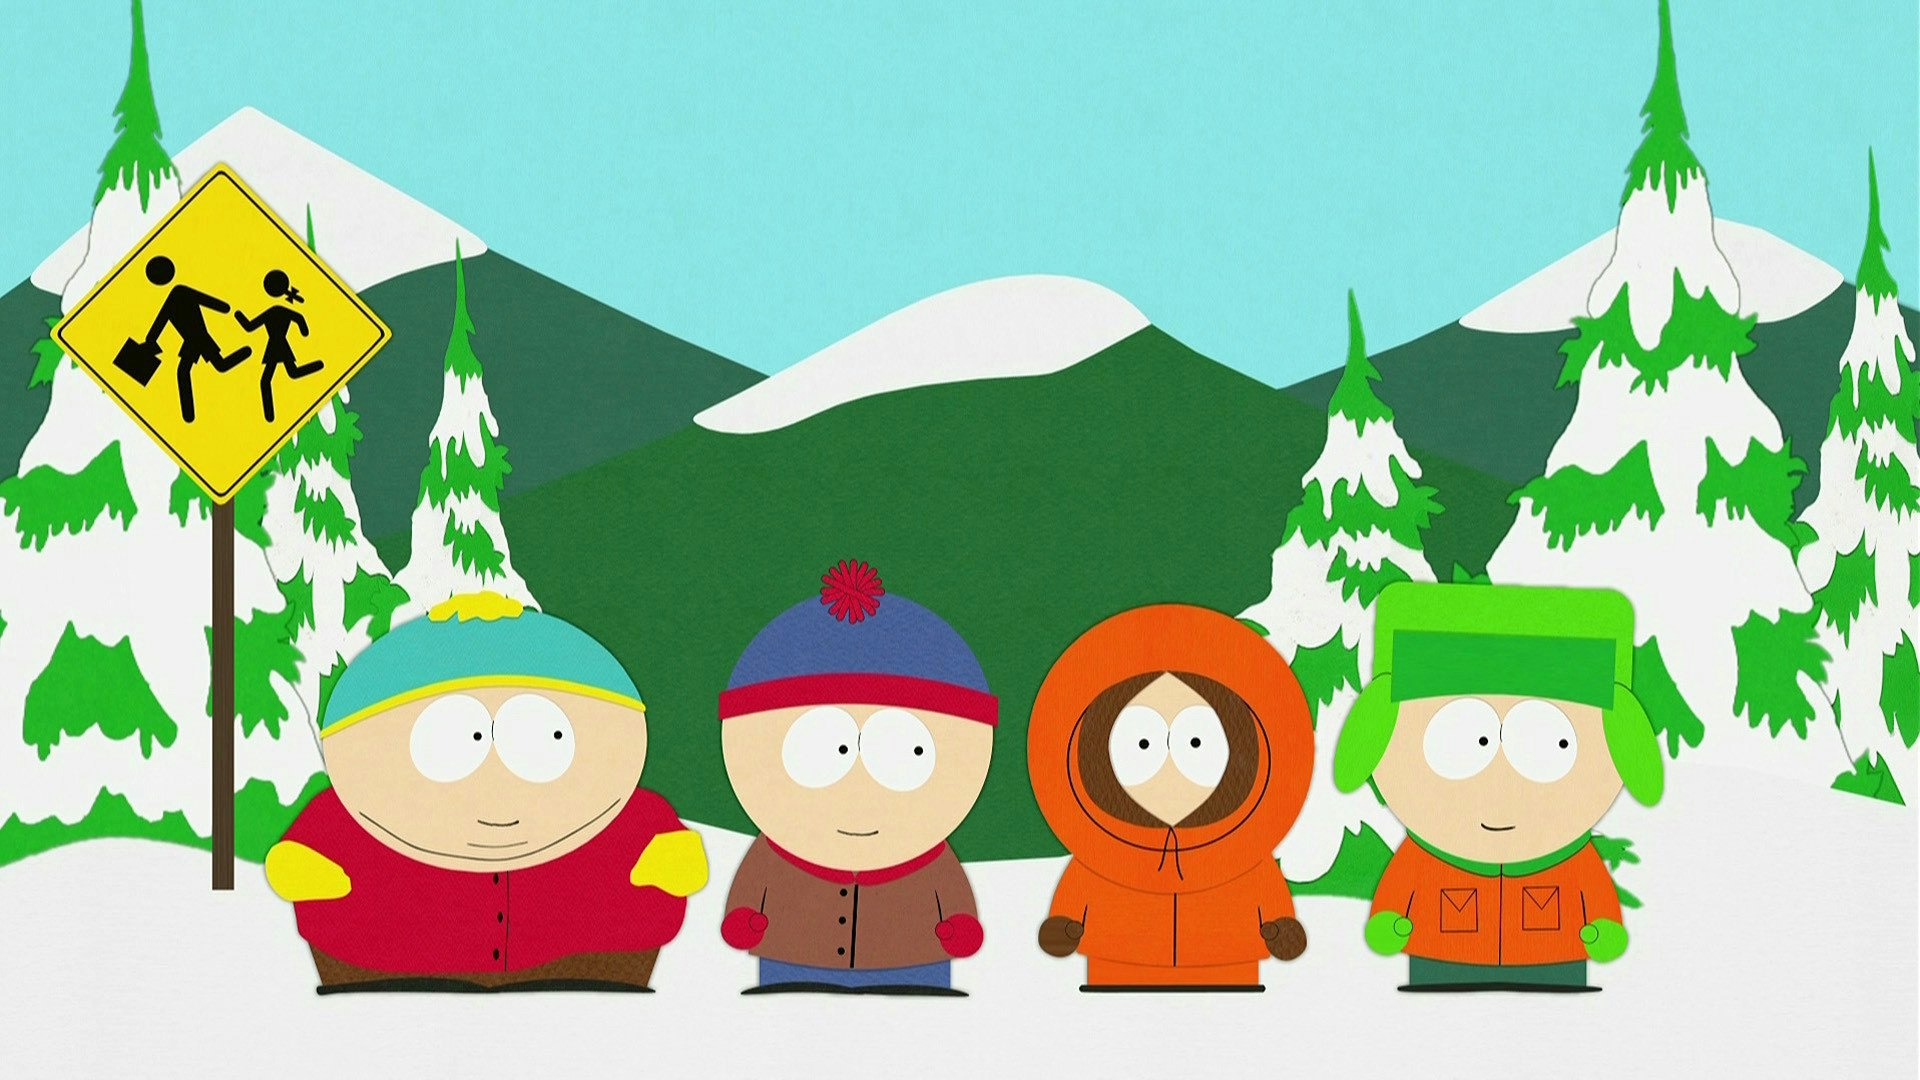 South Park: Bigger, Longer, Uncut Review